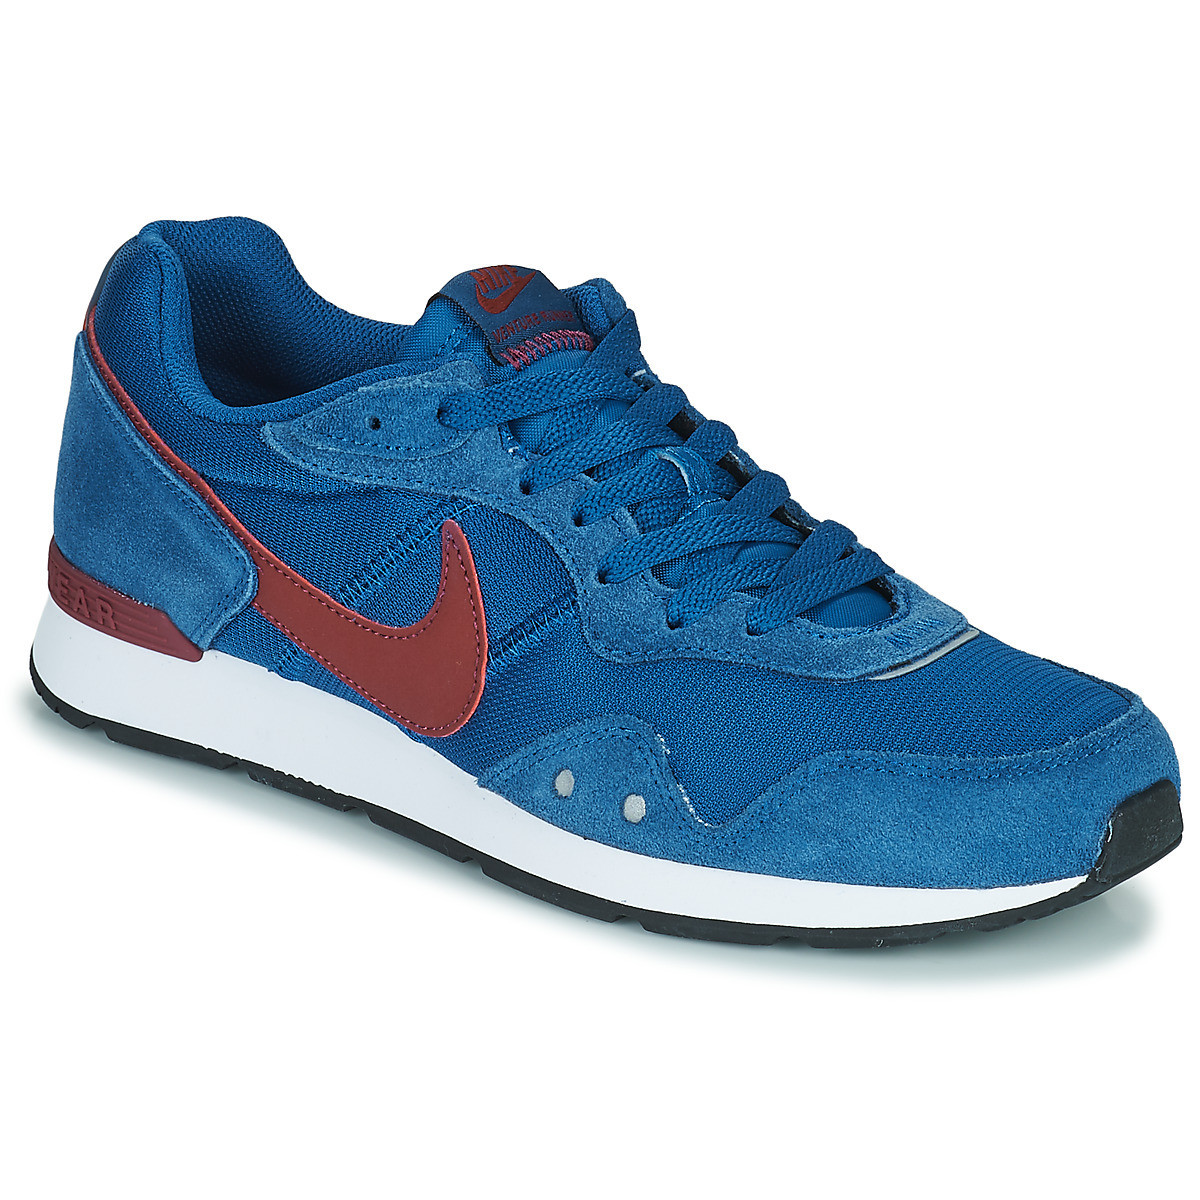 Pánská obuv Nike Venture Runner M CK2944-400 42,5 světle modrá